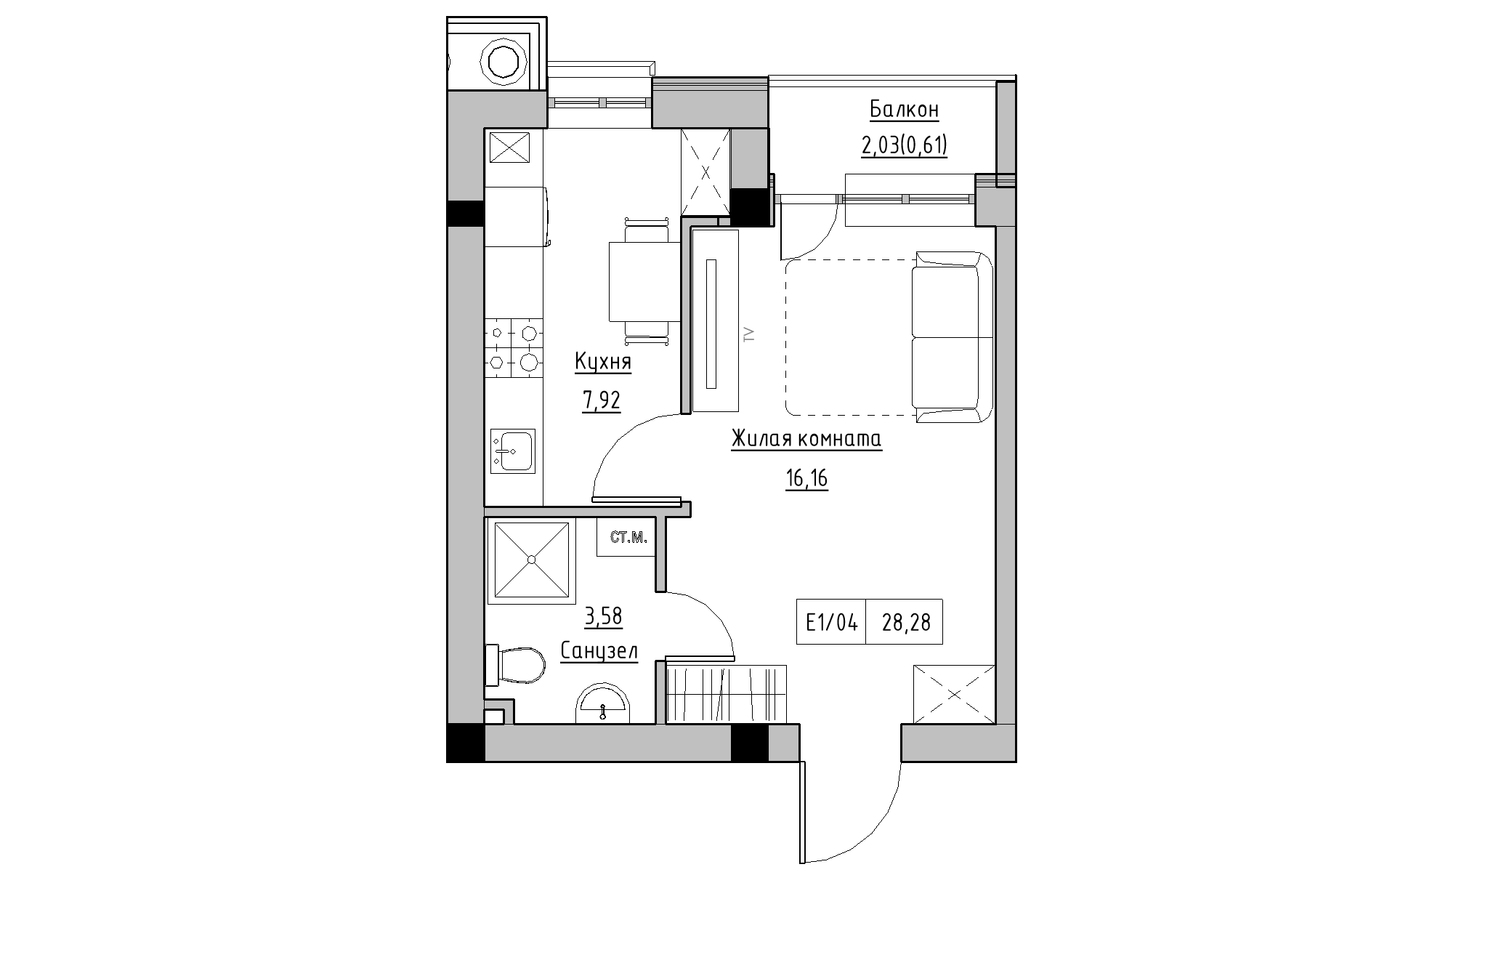 Планировка 1-к квартира площей 27.55м2, KS-010-05/0007.